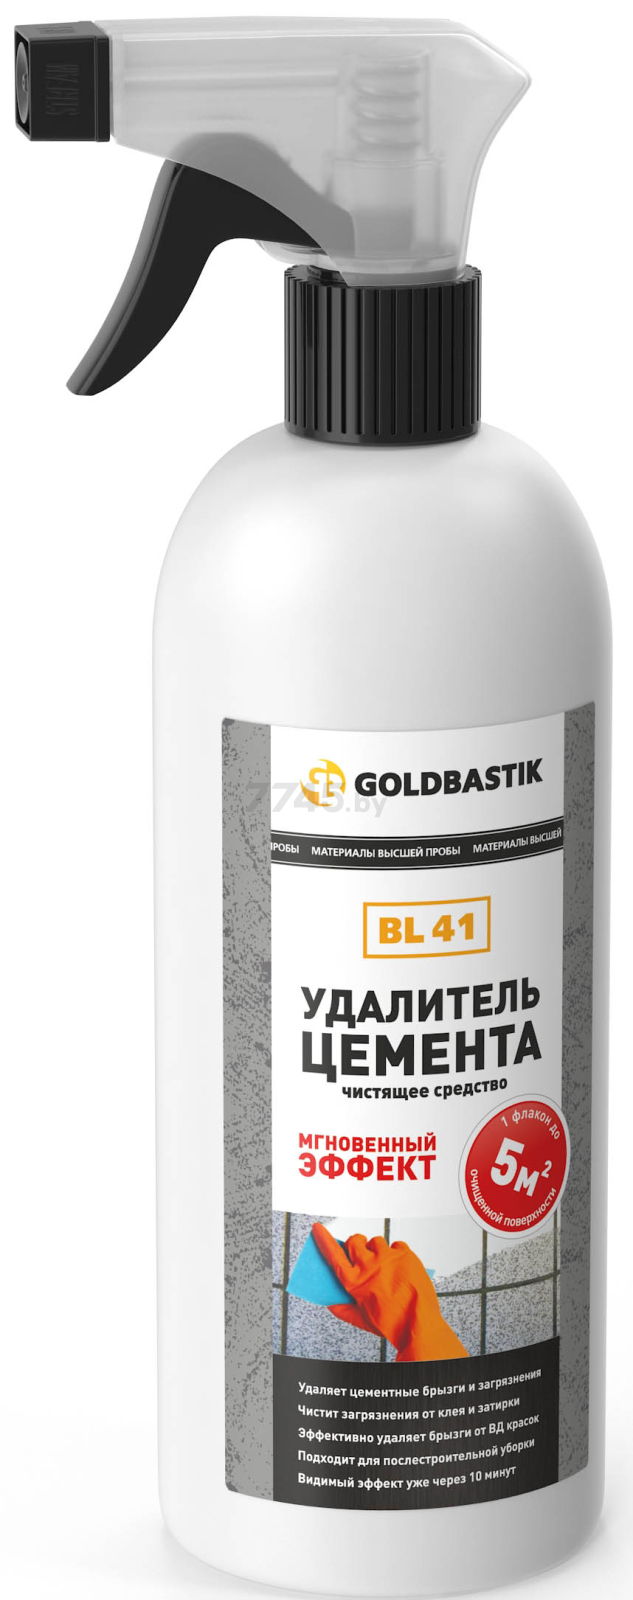 Средство для удаления цемента GOLDBASTIK 0,5 л (BL 41)